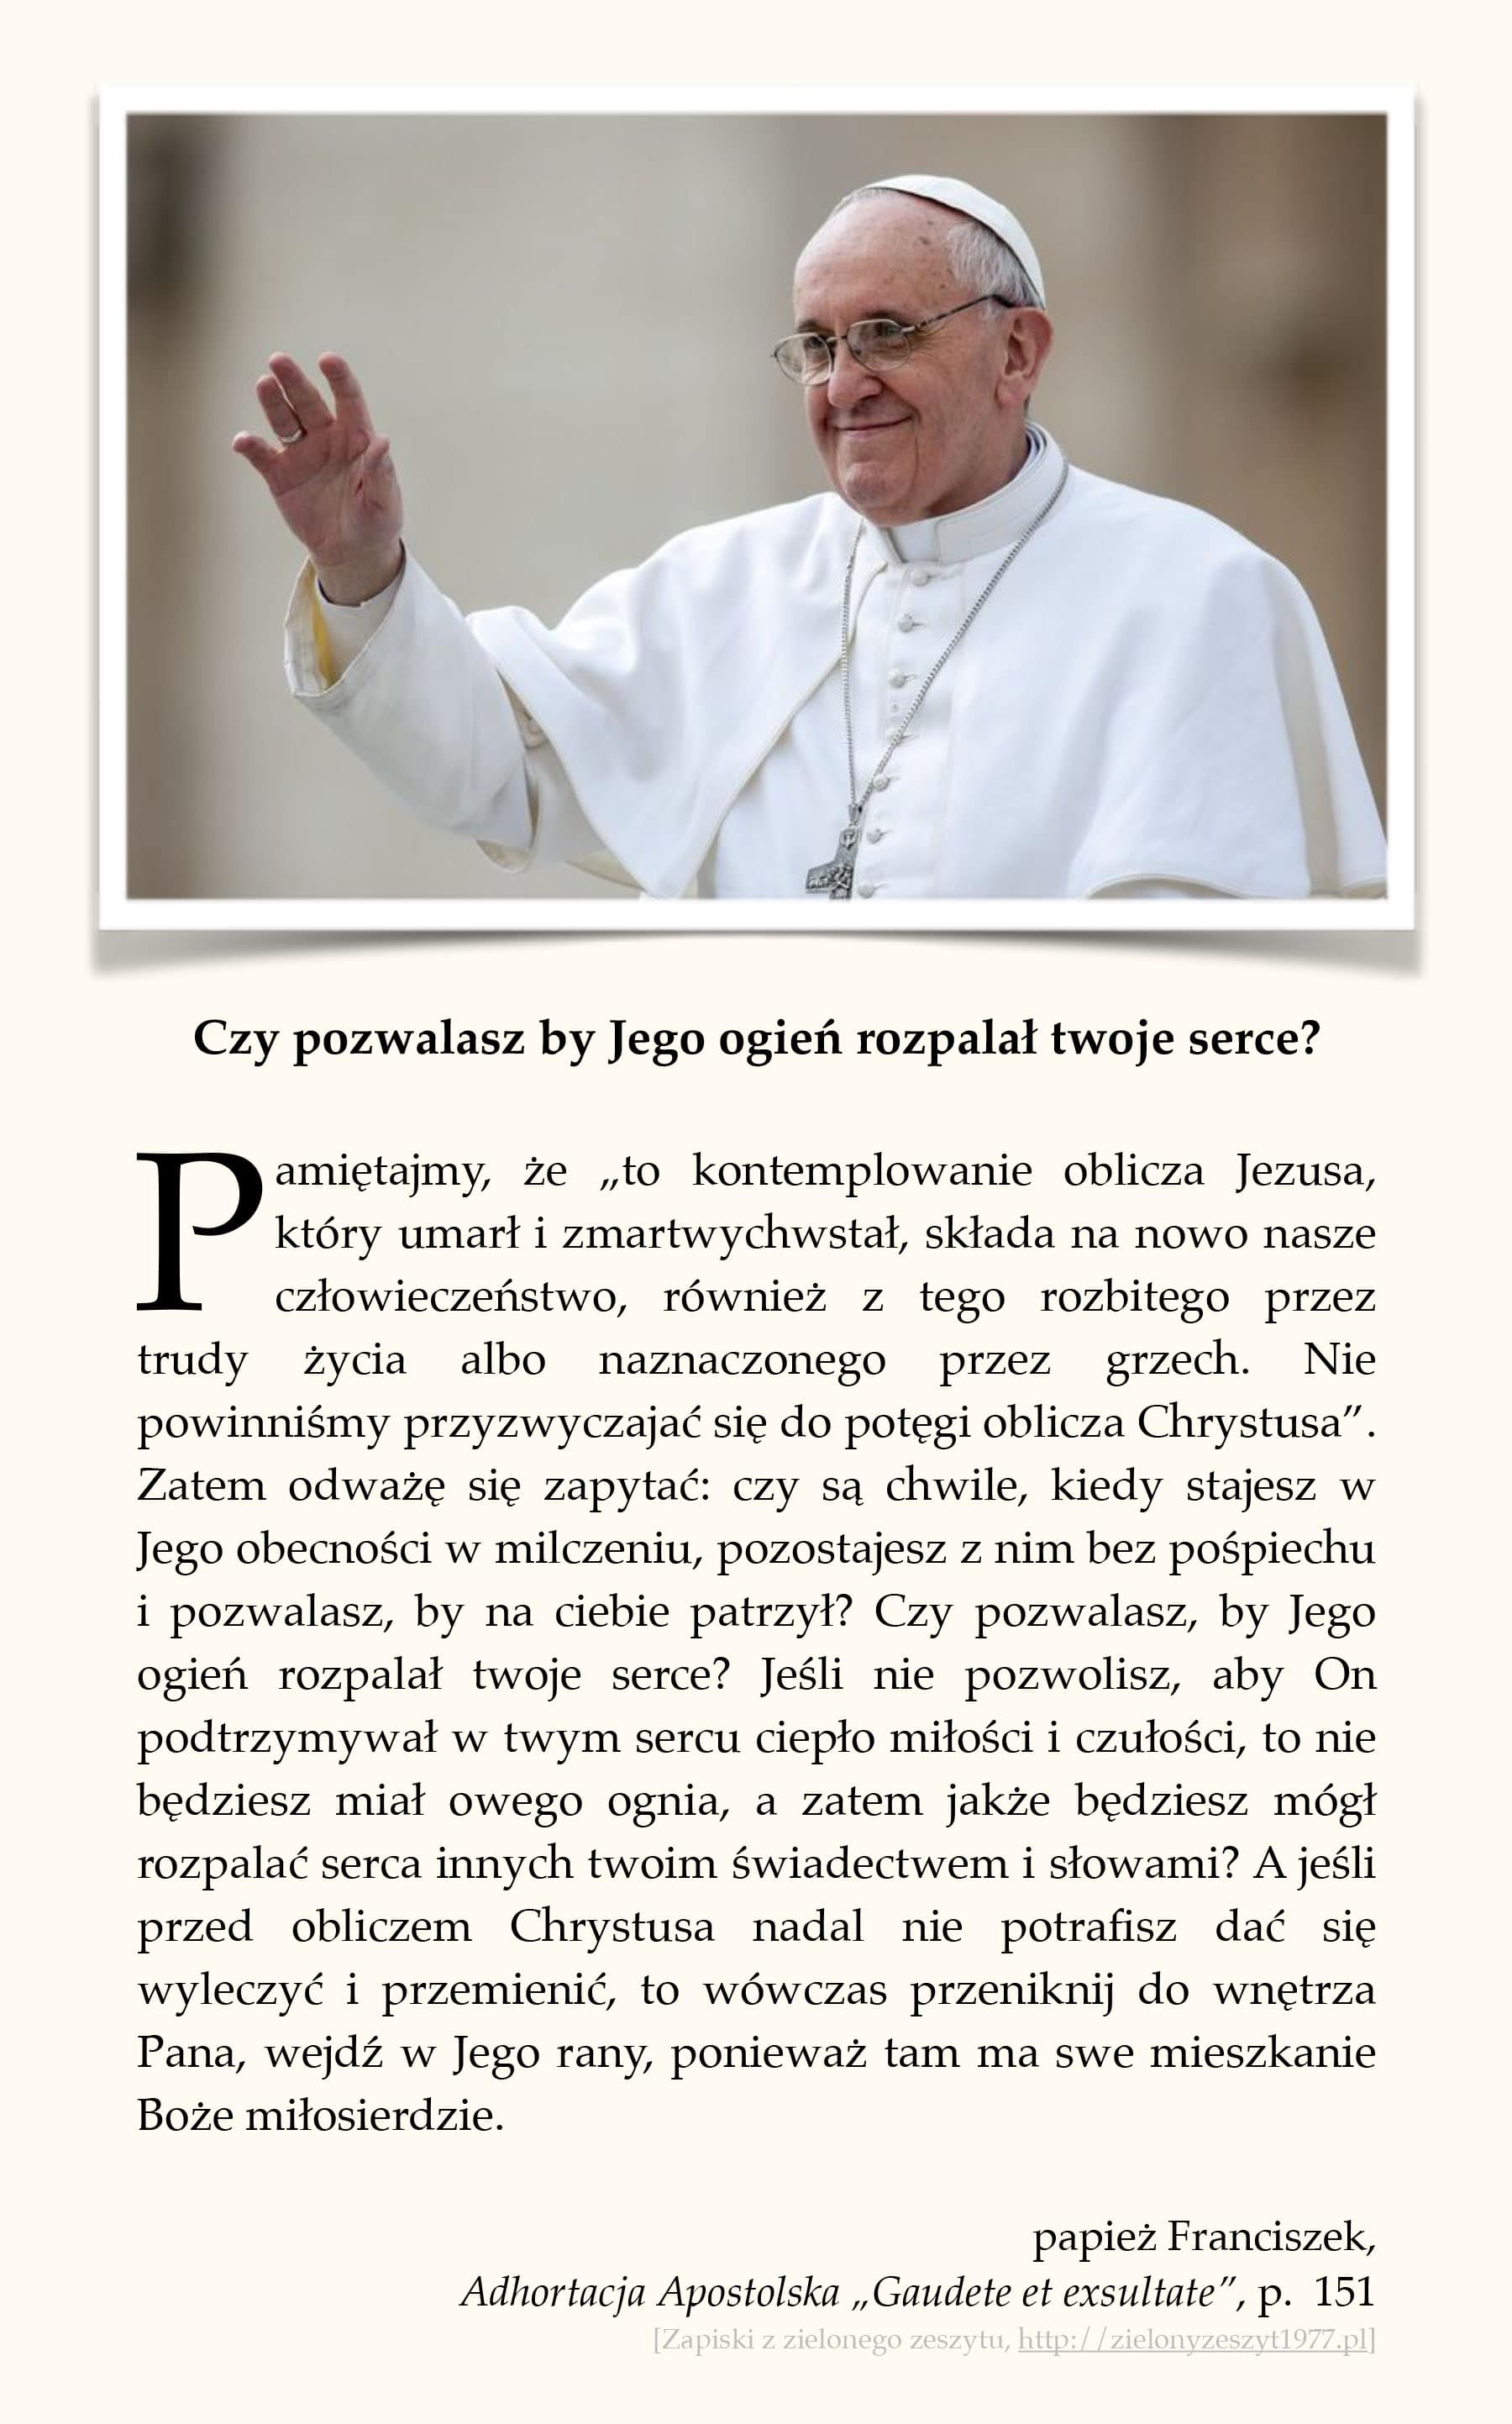 papież Franciszek, Adhortacja Apostolska „Gaudete et exsultate”, p. 151 (Czy pozwalasz by Jego ogień rozpalał twoje serce?)